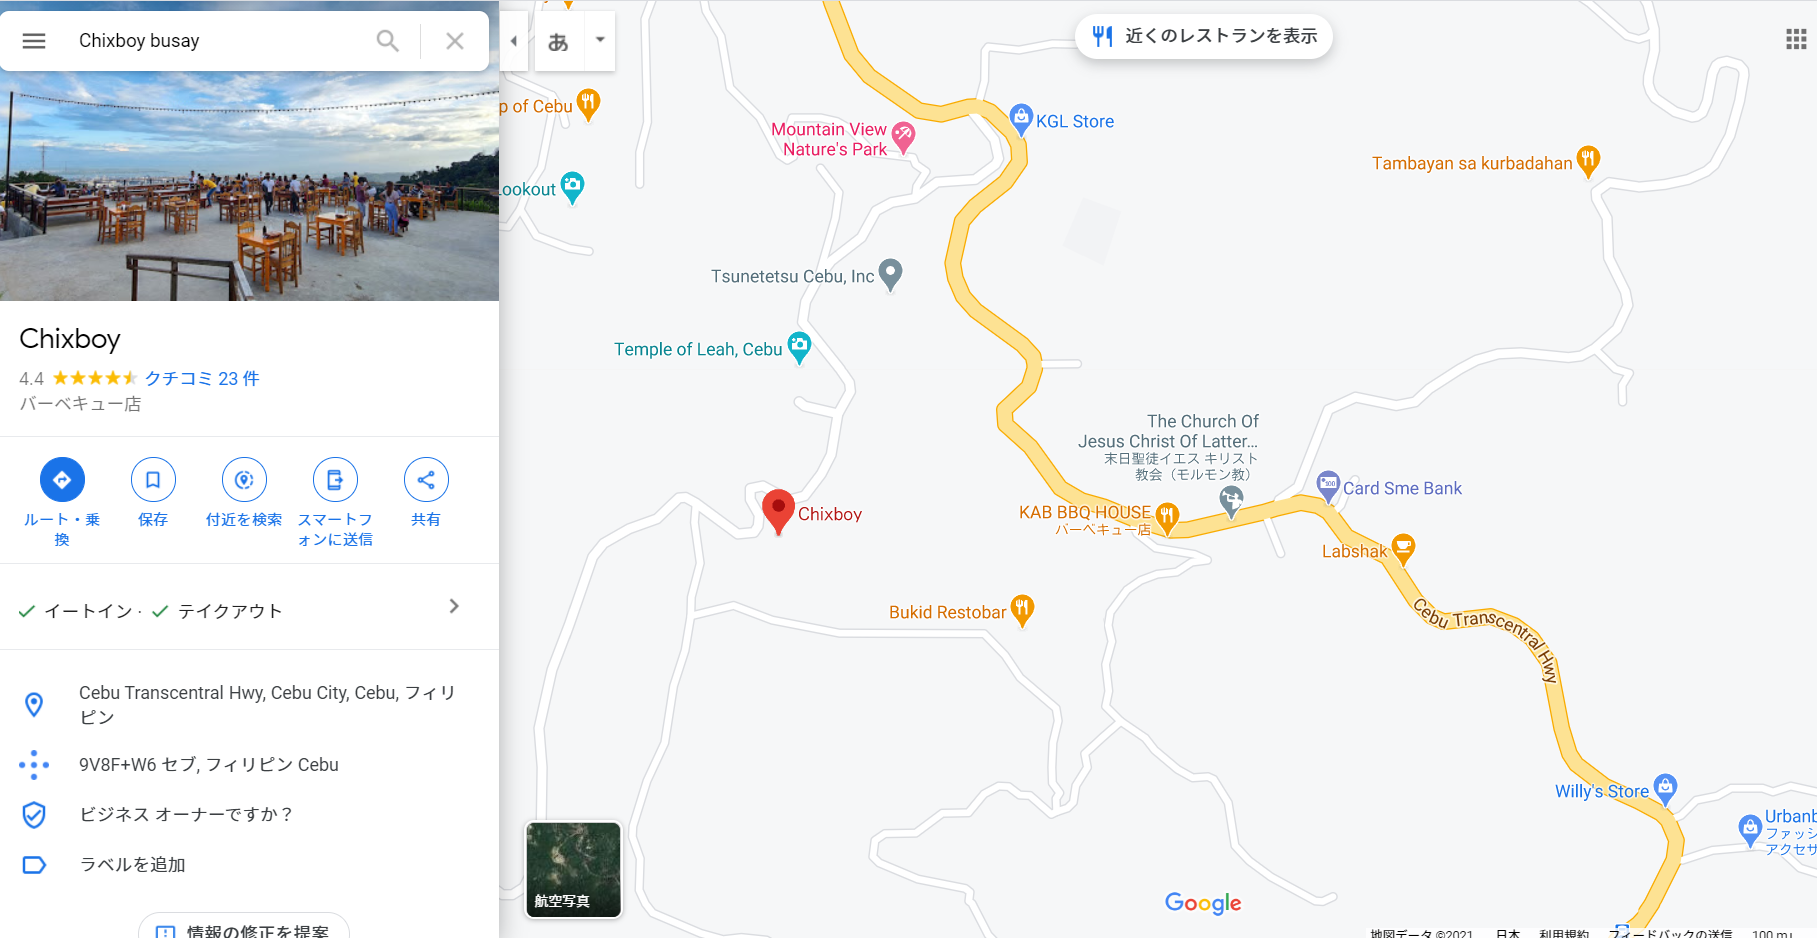 住所：Cebu Transcentral Hwy, Cebu City, Cebu, フィリピン
　　　(Chixboy busayとGoogle Mapで検索すると出てきます。）
営業時間: 4:00 PM – 10:00 PM
電話番号: 0956 789 5704
Facebookページ: https://www.facebook.com/chixboycebu/